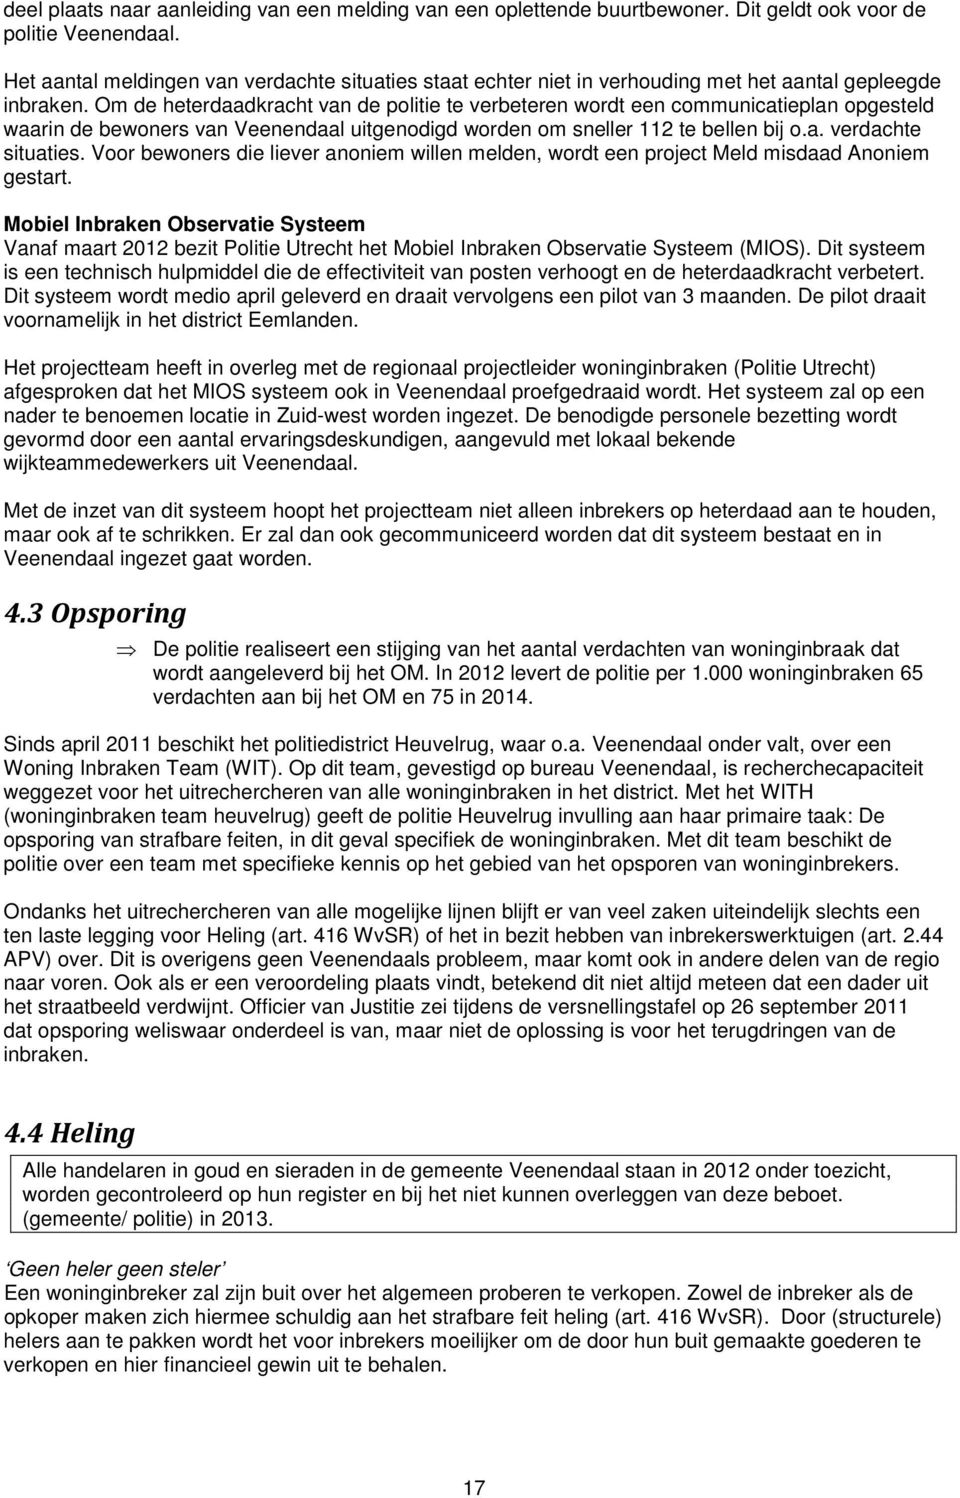 Om de heterdaadkracht van de politie te verbeteren wordt een communicatieplan opgesteld waarin de bewoners van Veenendaal uitgenodigd worden om sneller 112 te bellen bij o.a. verdachte situaties.